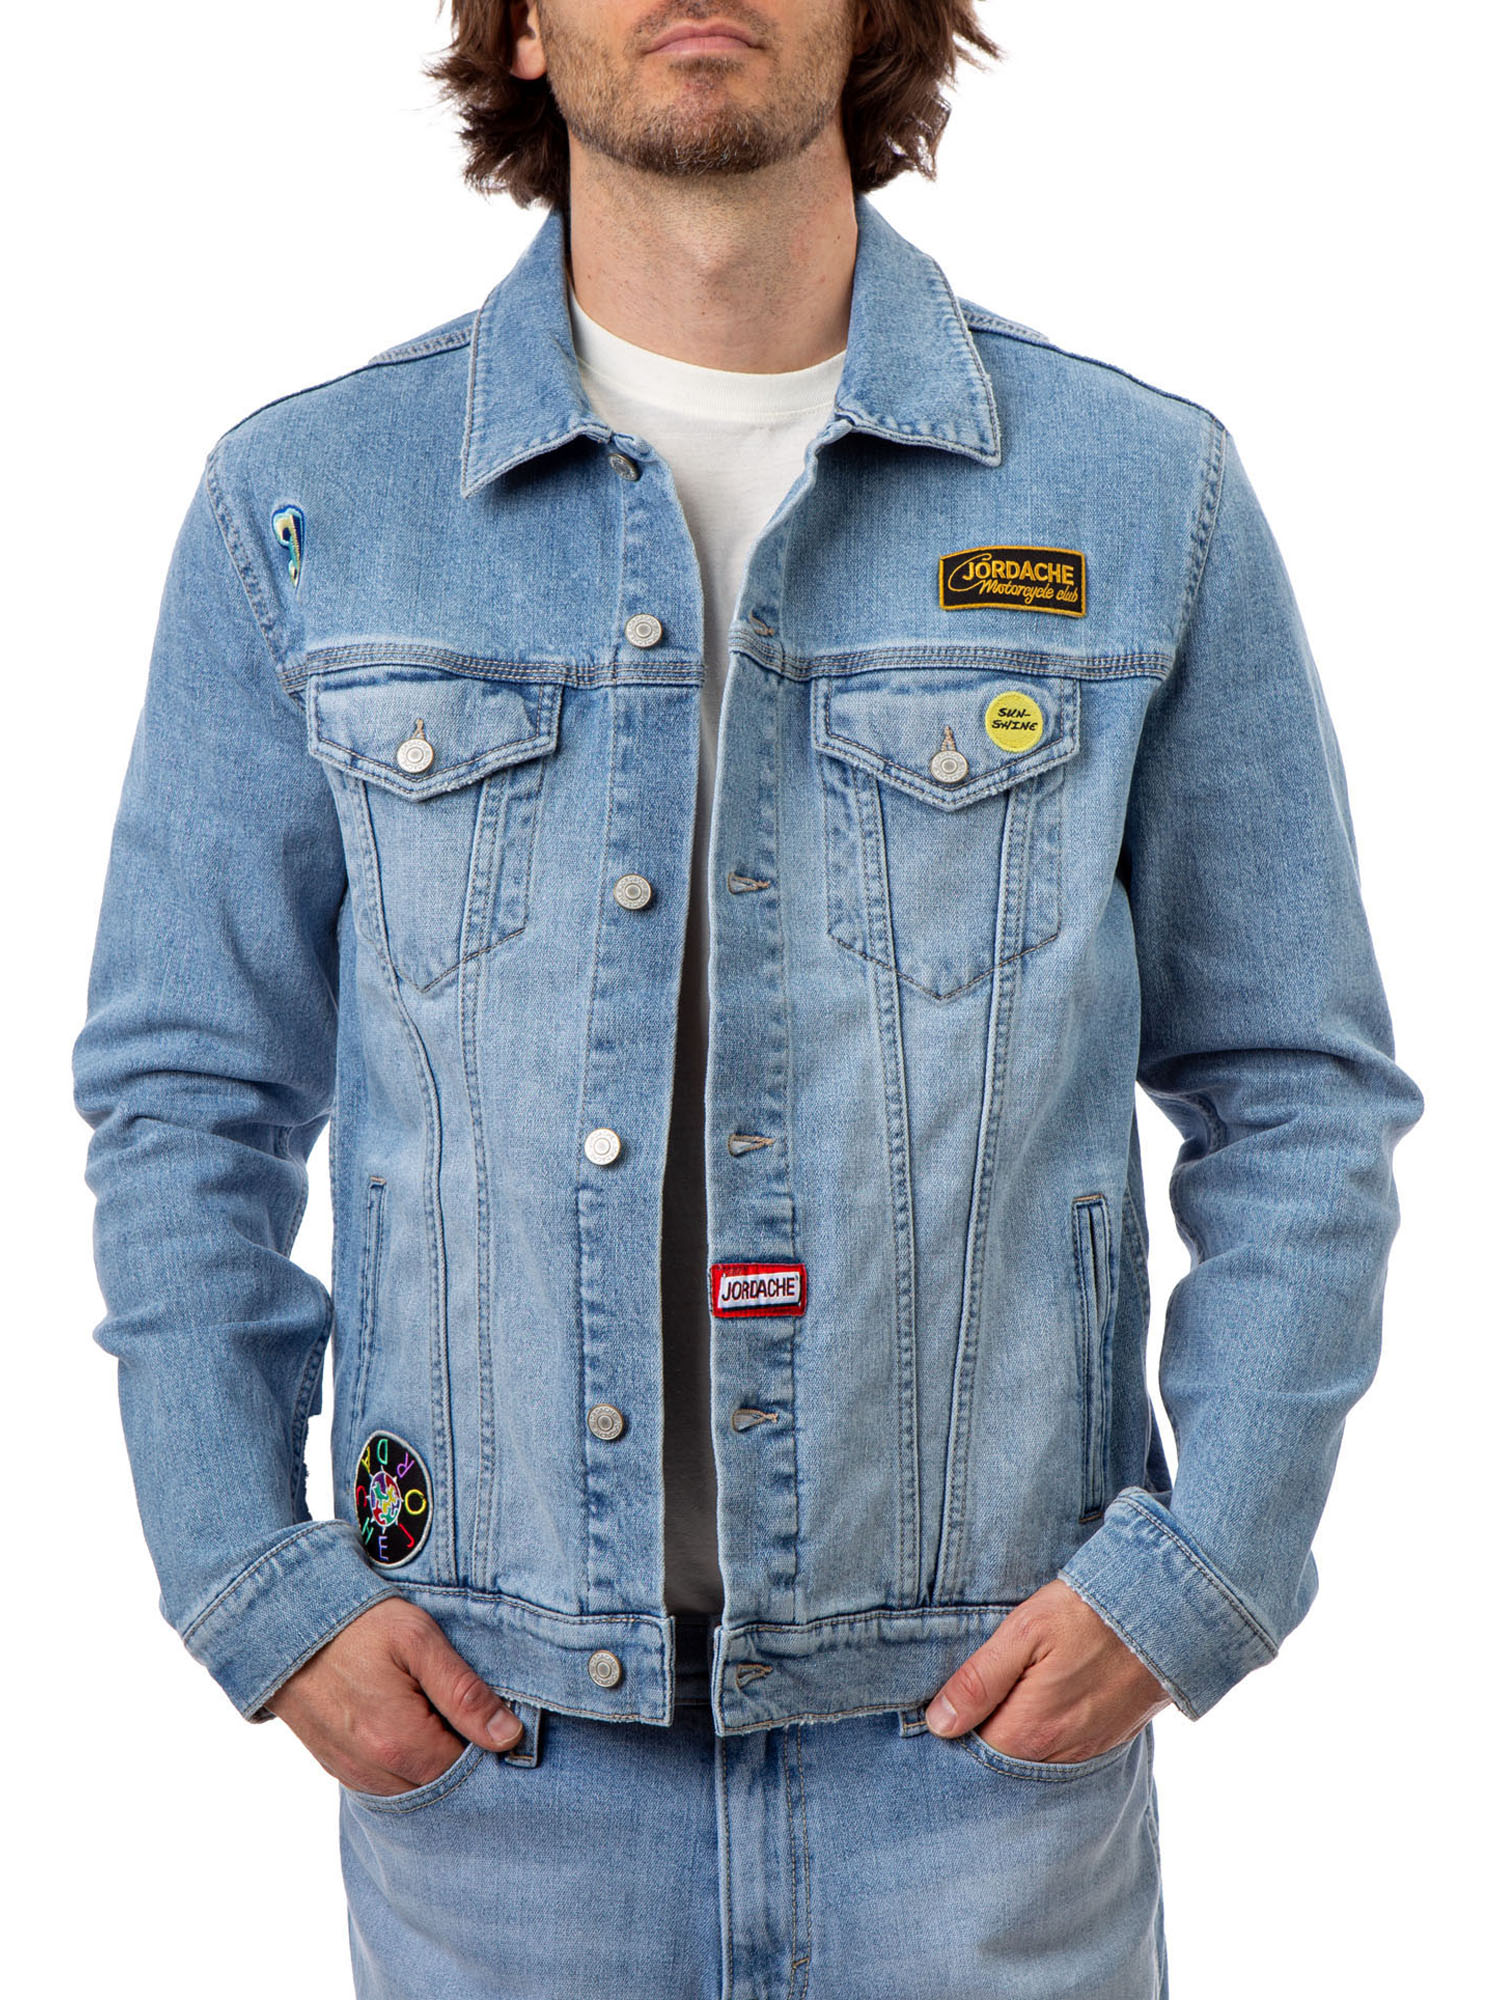 Jordache Vintage Men's Nash Patches Denim Jacket, Sizes S-2XL, Men's Denim Jean Jackets - image 2 of 6